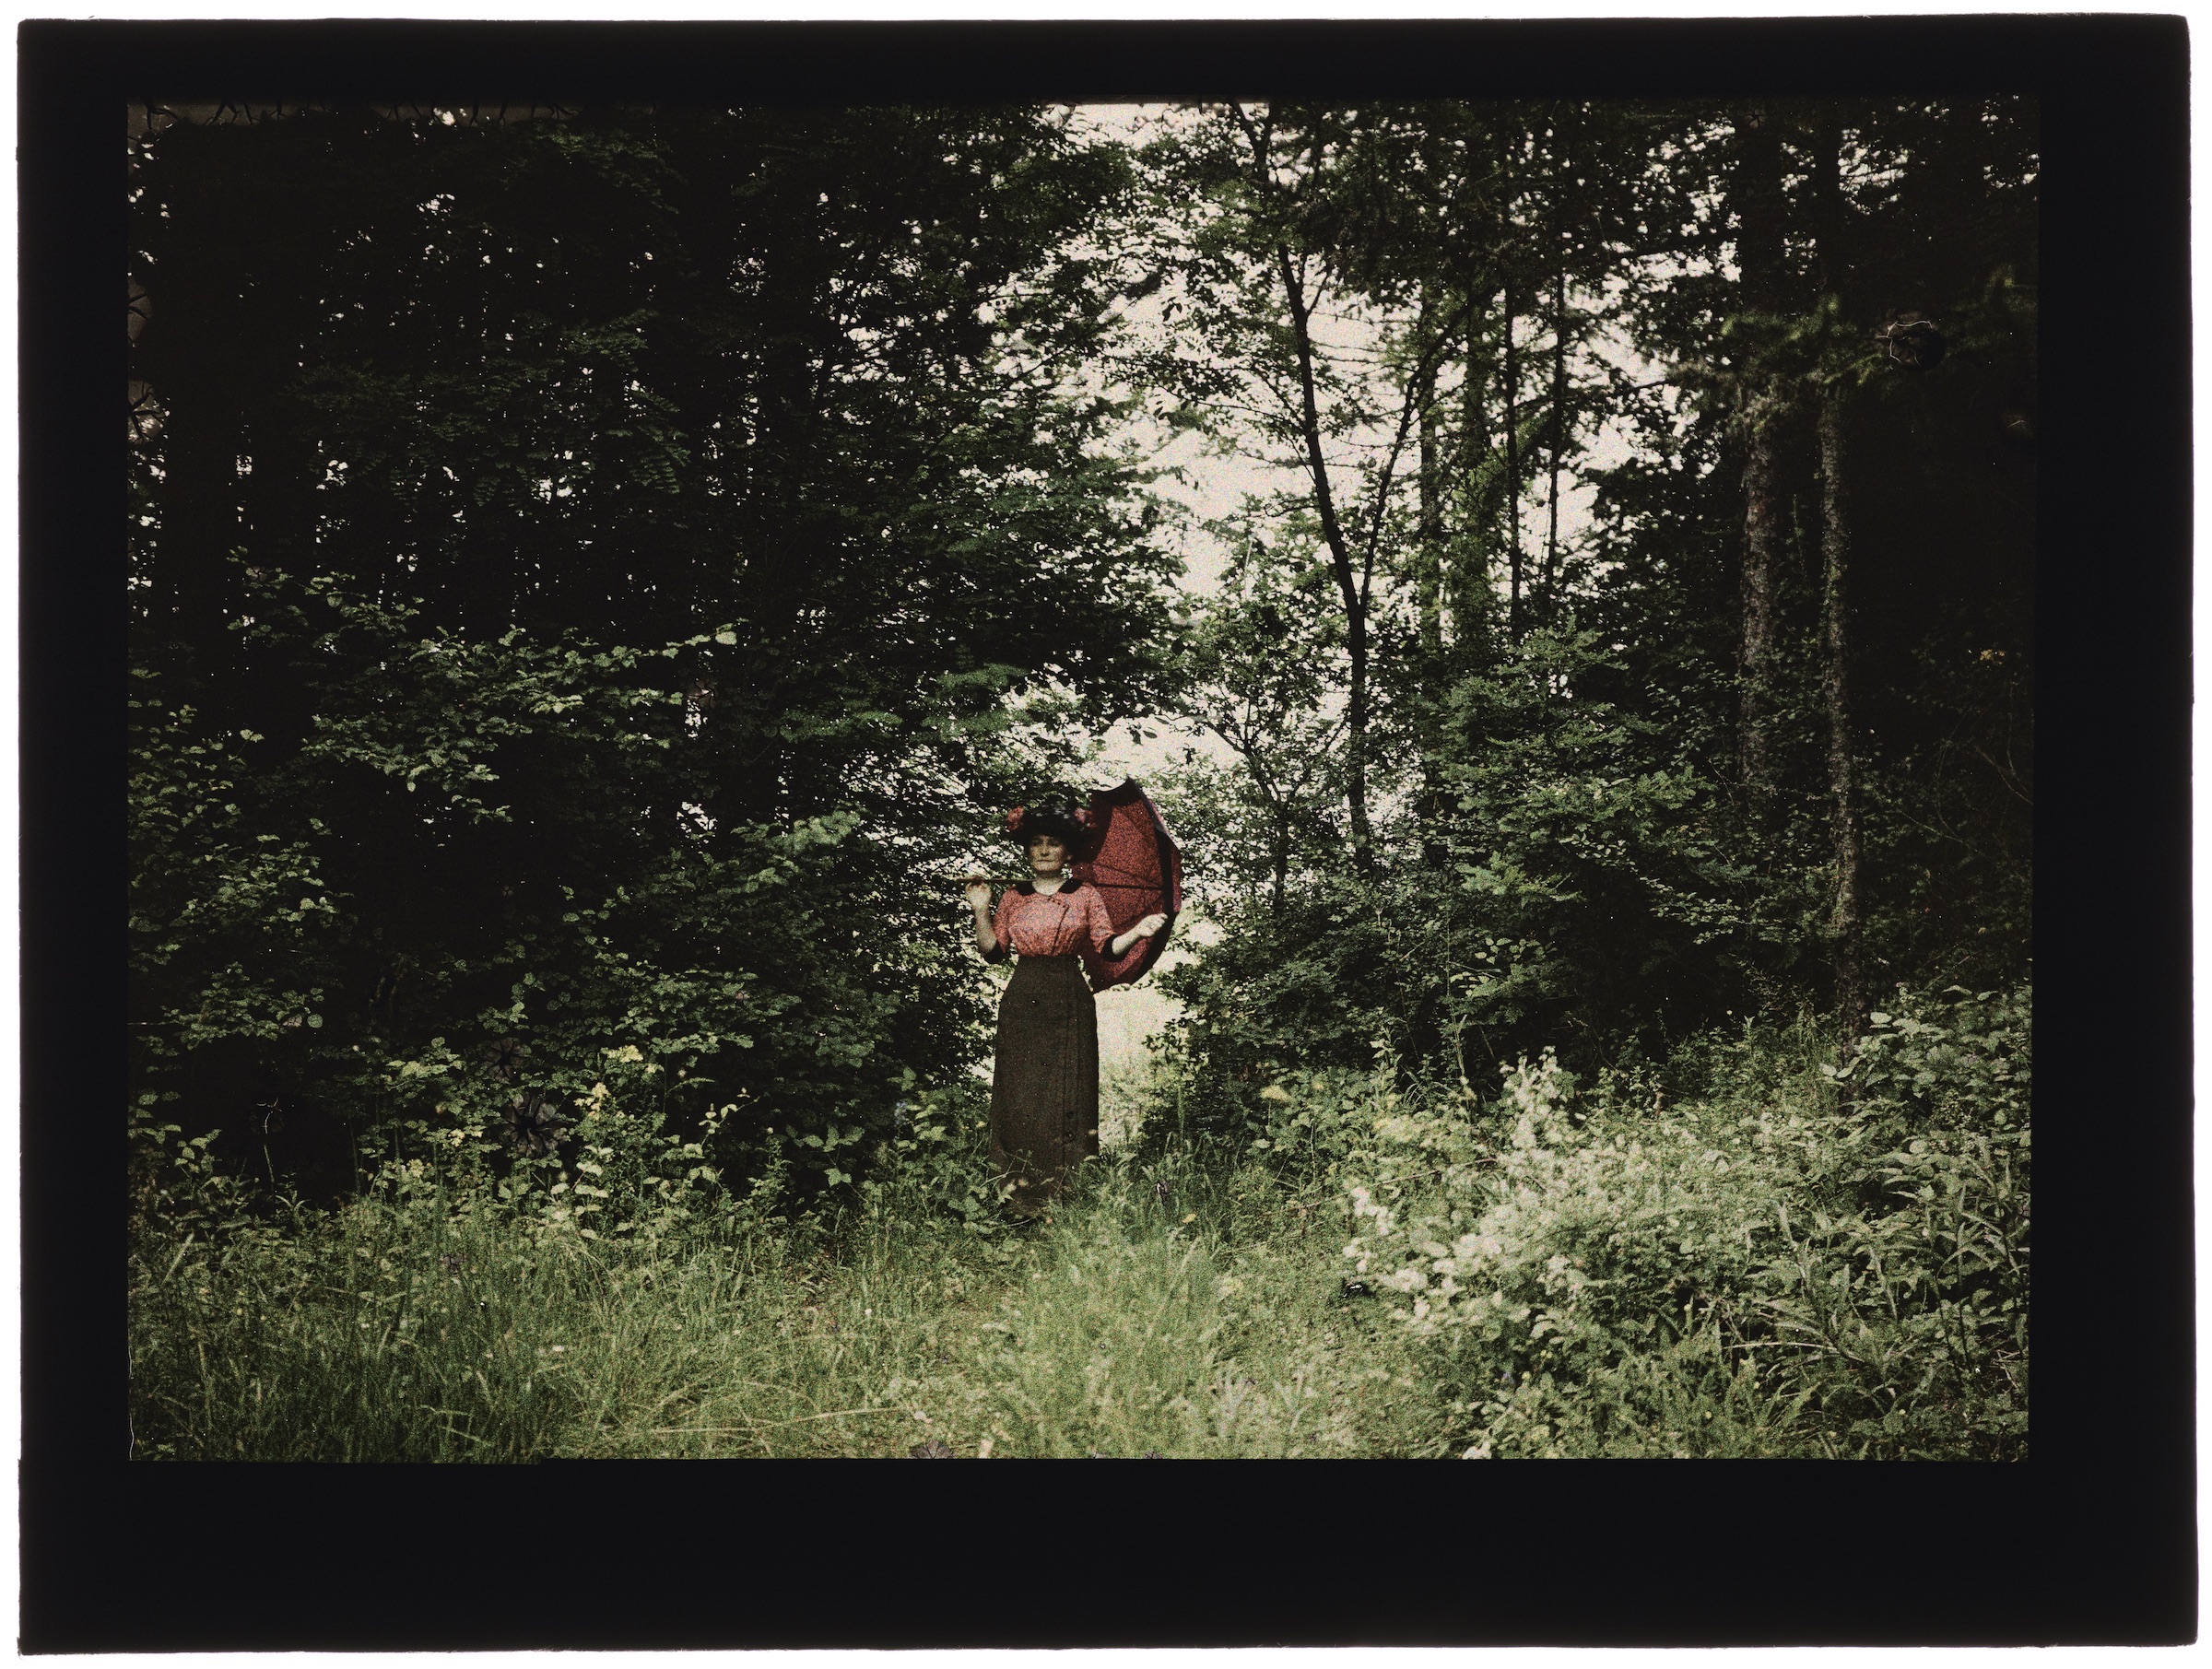 Femme(s) dans la forêt (avec de hautes buttes de terre) ou la campagne